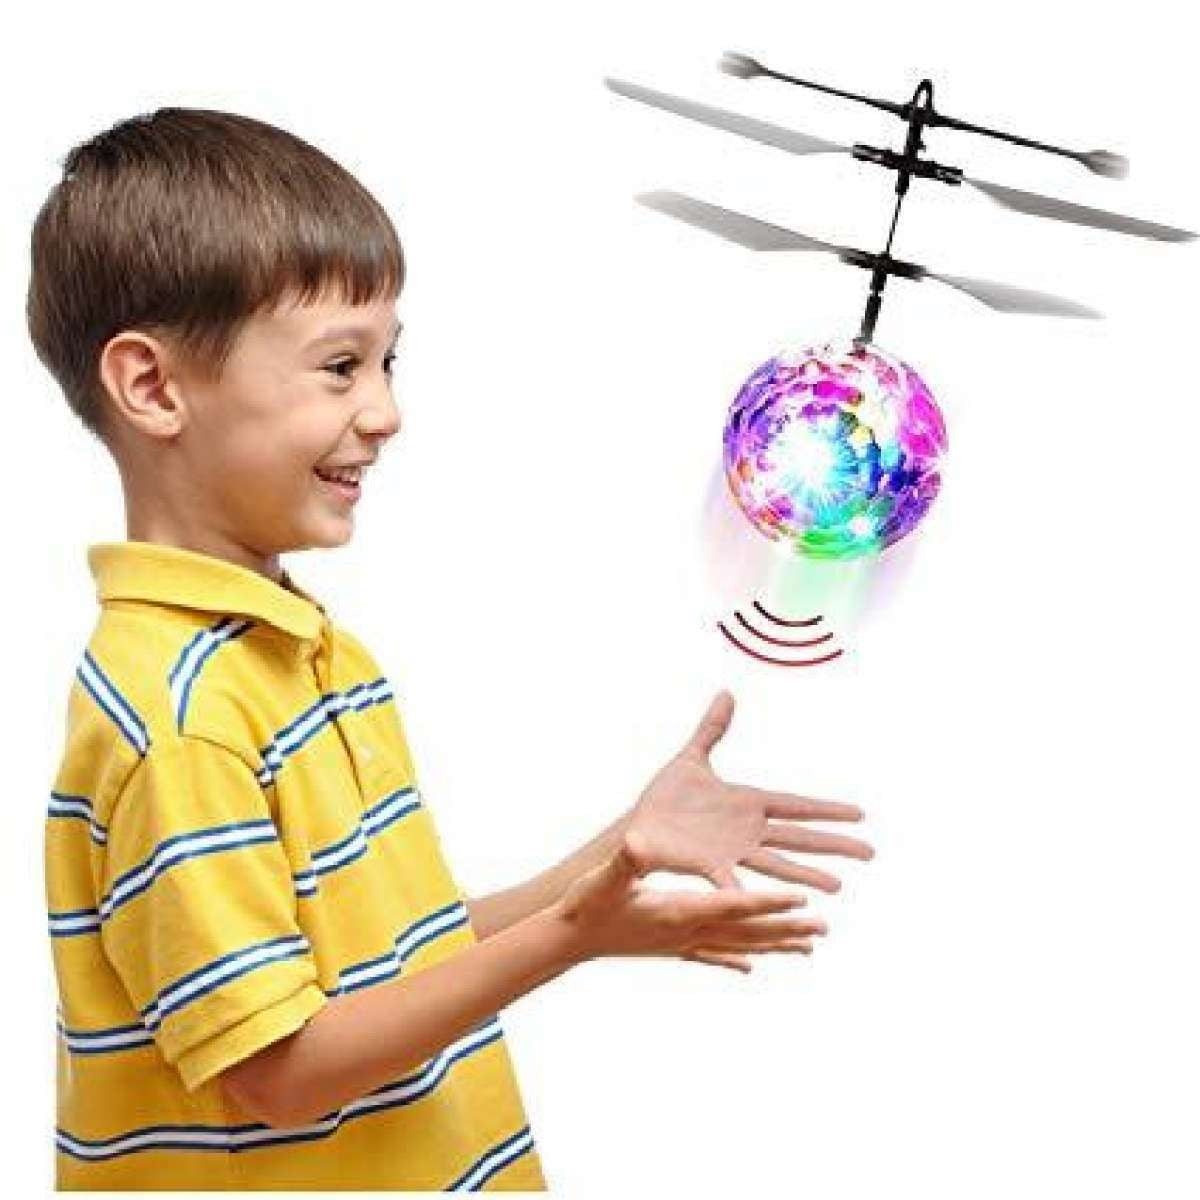 Drone juguete con luces bola voladora para niños y niñas